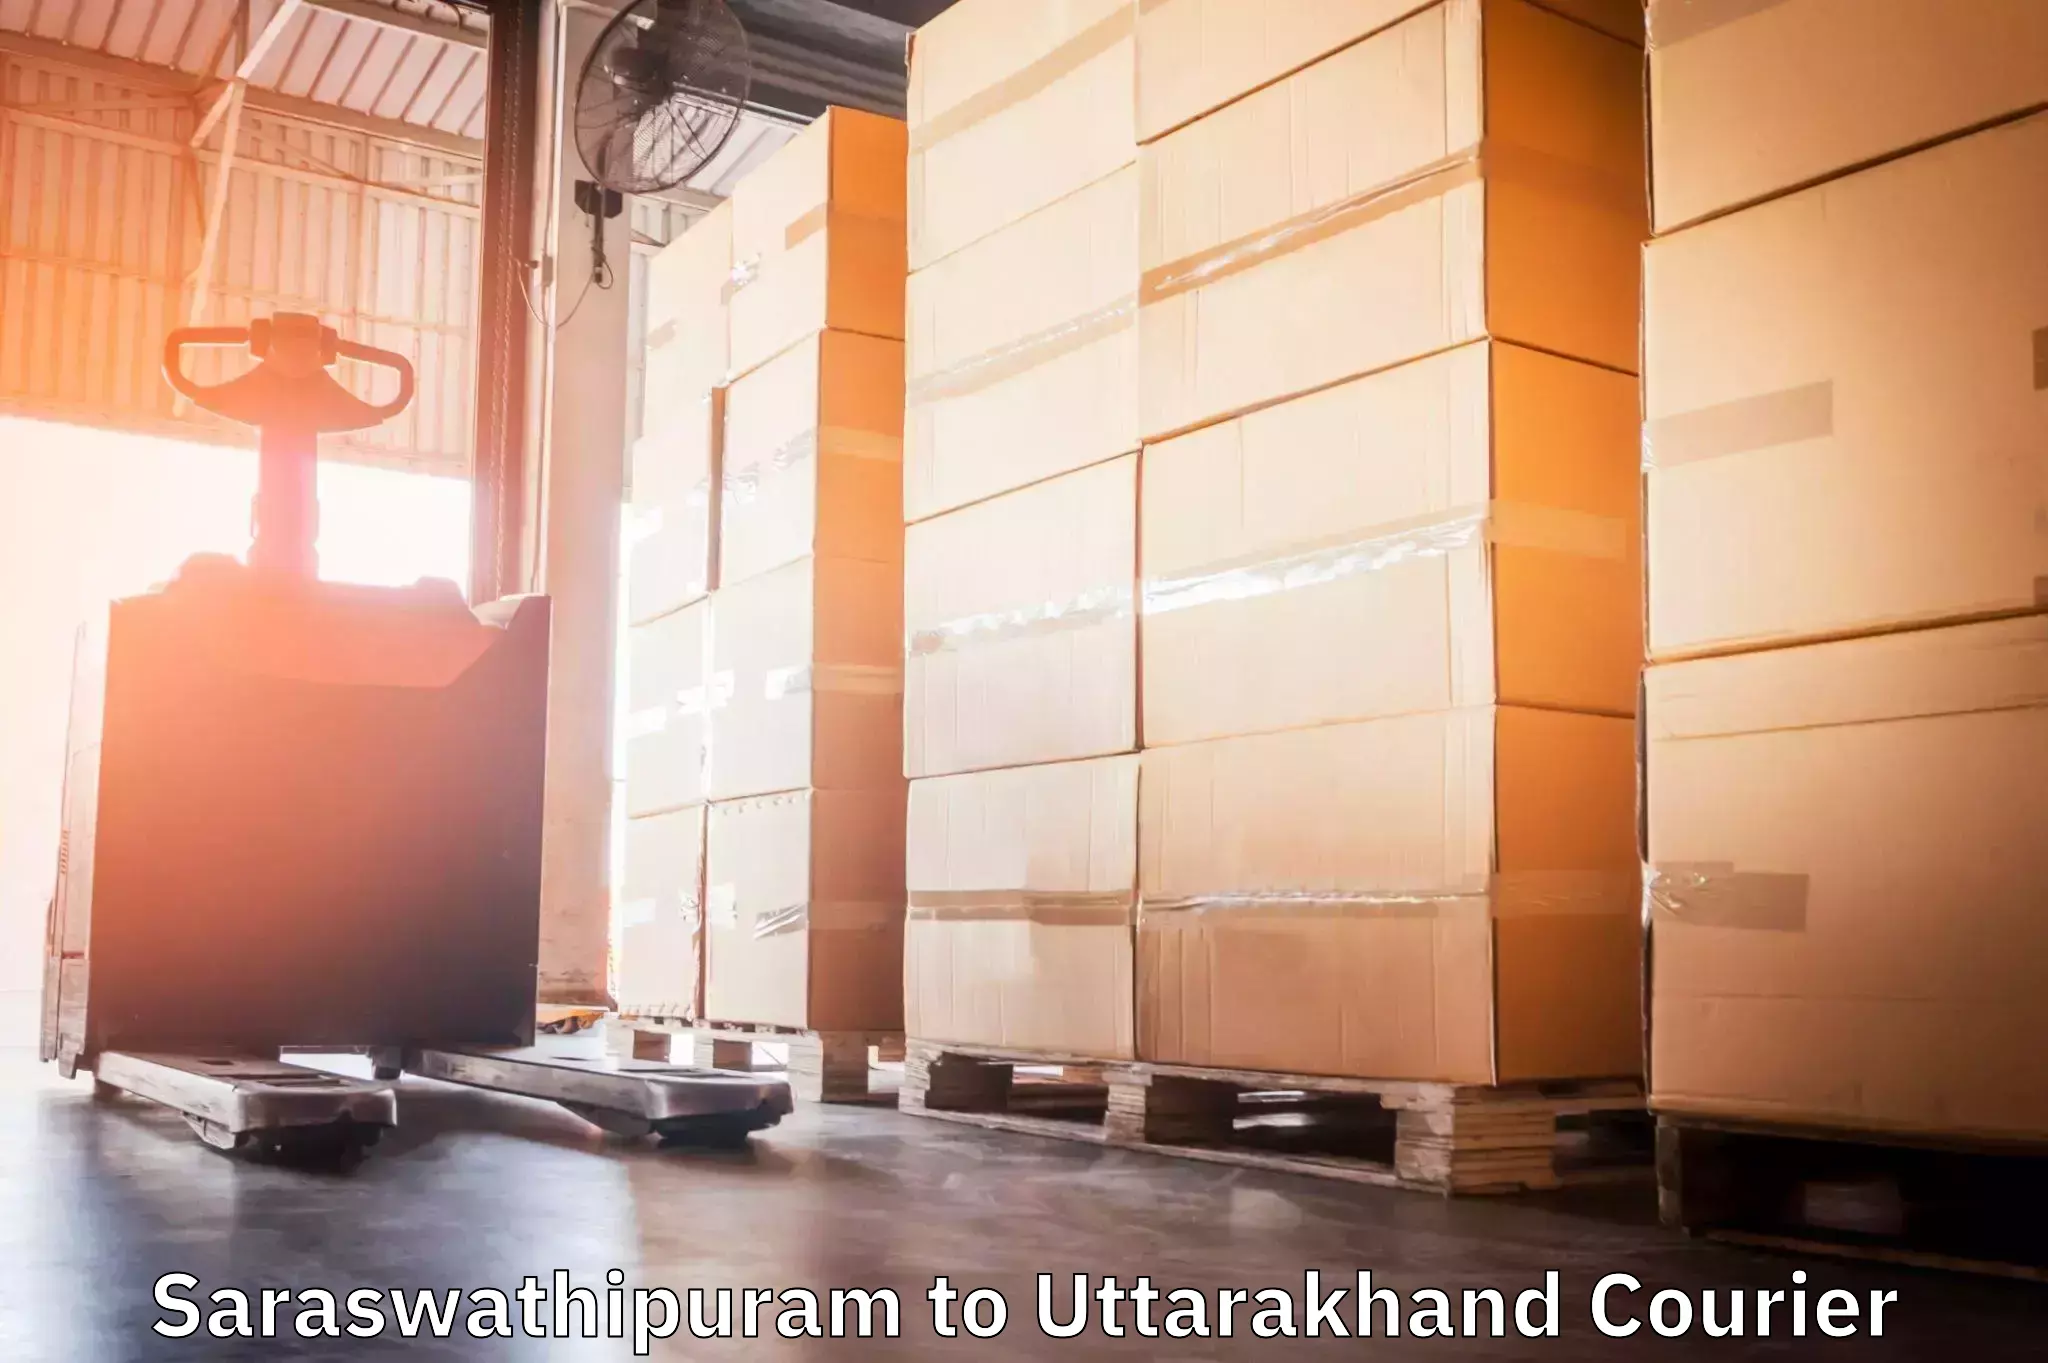 Urban courier service Saraswathipuram to Uttarakhand